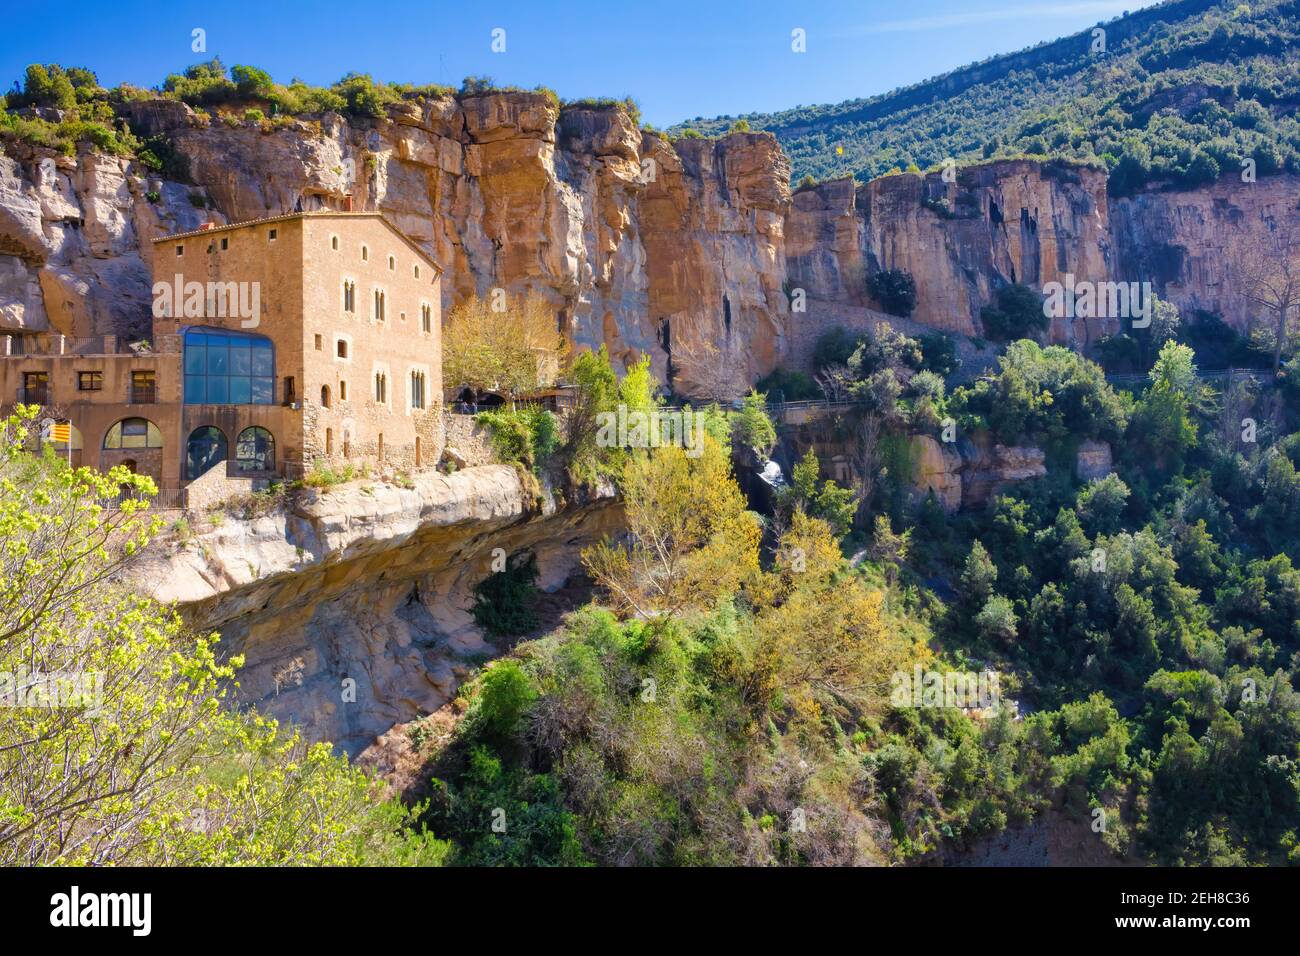 Blick auf die Abtei auf einem Felsvorsprung im natürlichen Raum von Sant Miguel del Fai, Katalonien, Spanien Stockfoto